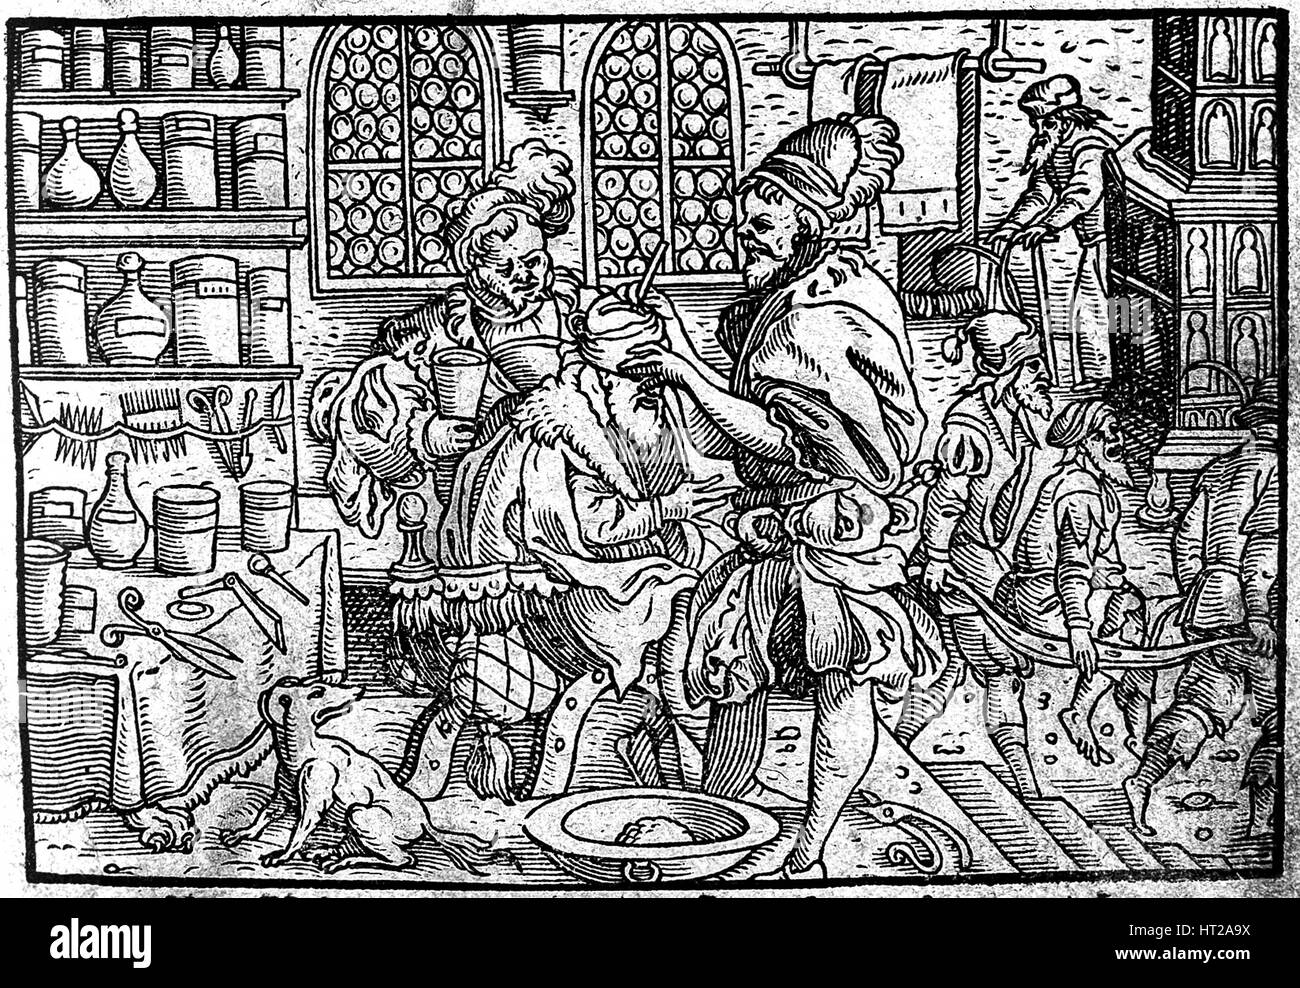 Betrieb am Kopf eines Mannes. Autor: Die Große Wundarzney Theophrastus Bombastus von Hohenheim, 1562. Künstler: anonym Stockfoto